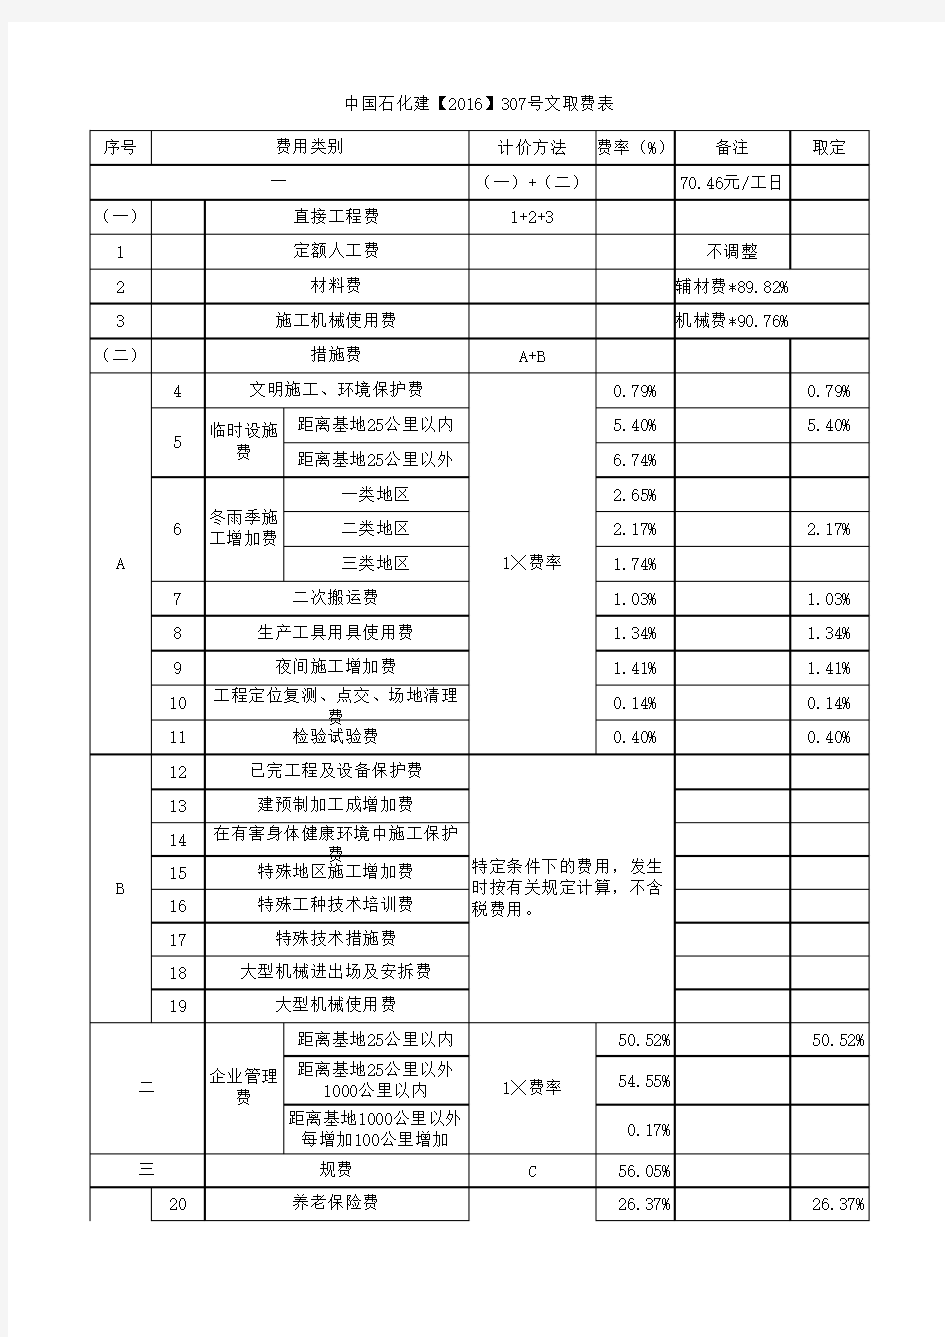 中国石化建2016-307号文费用表